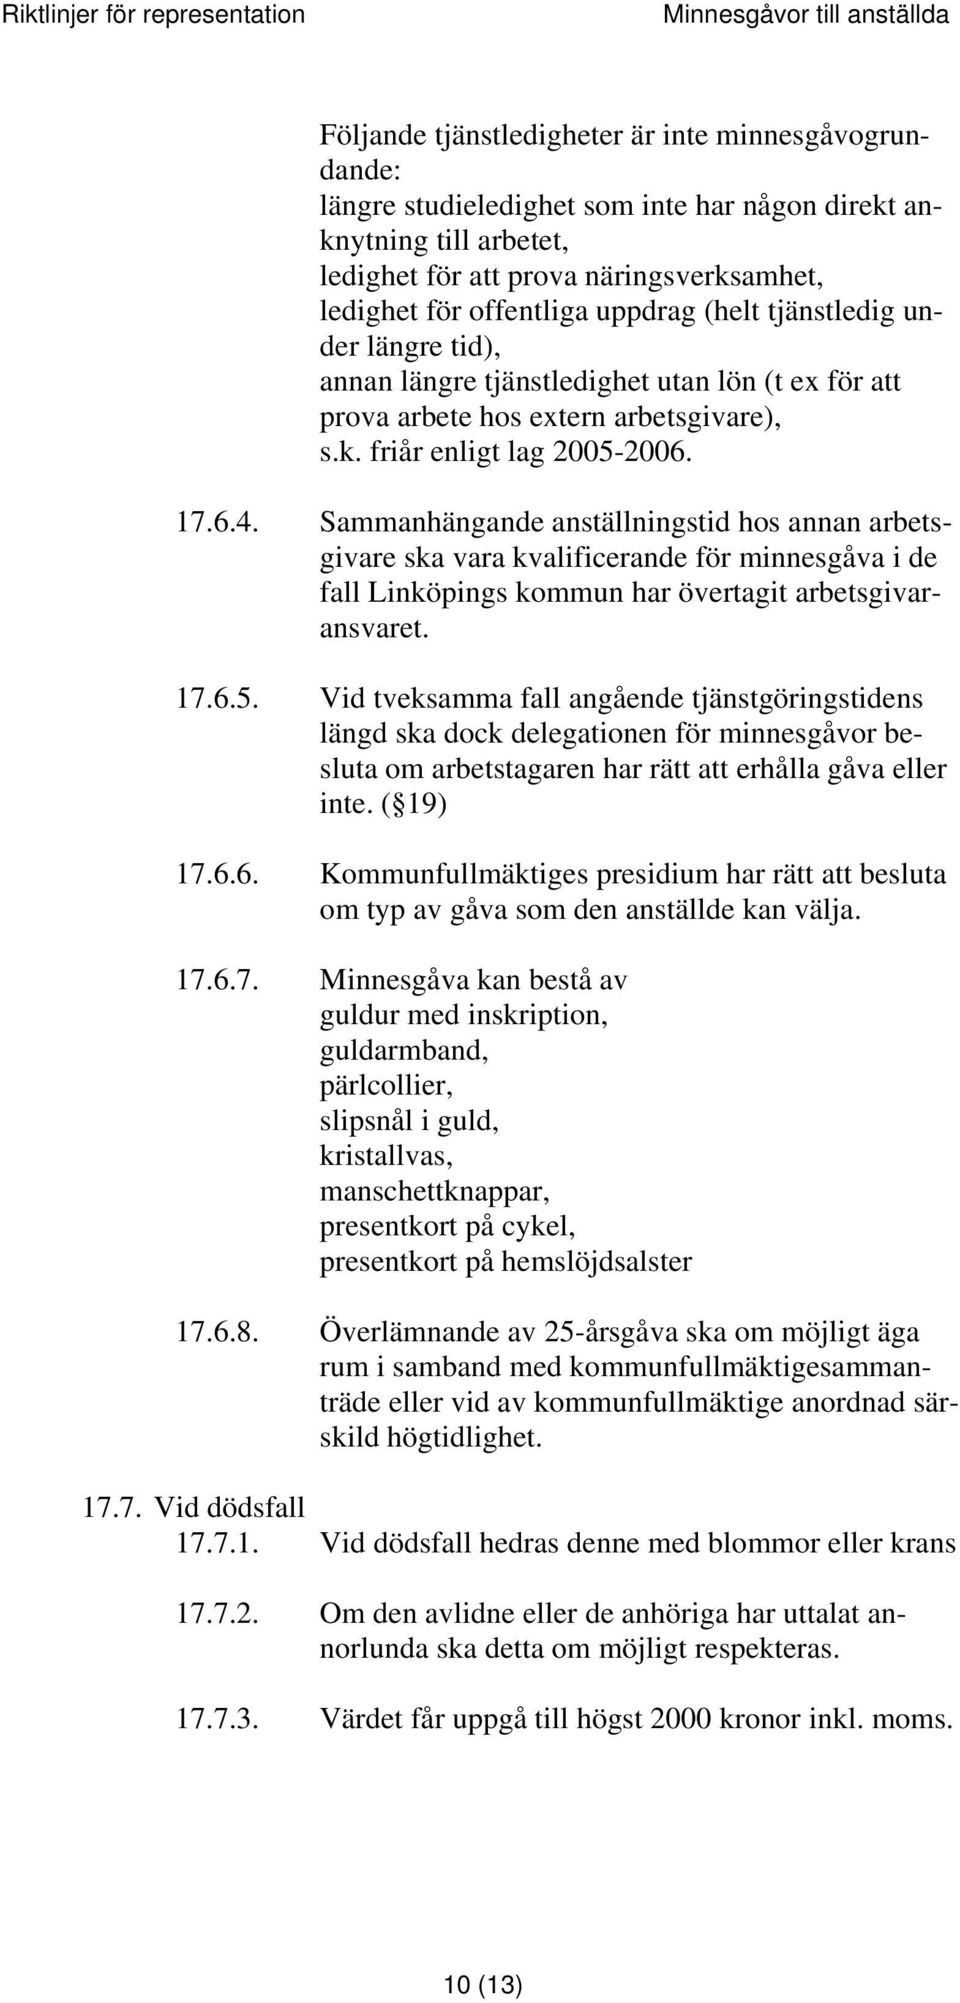 Sammanhängande anställningstid hos annan arbetsgivare ska vara kvalificerande för minnesgåva i de fall Linköpings kommun har övertagit arbetsgivaransvaret. 17.6.5.